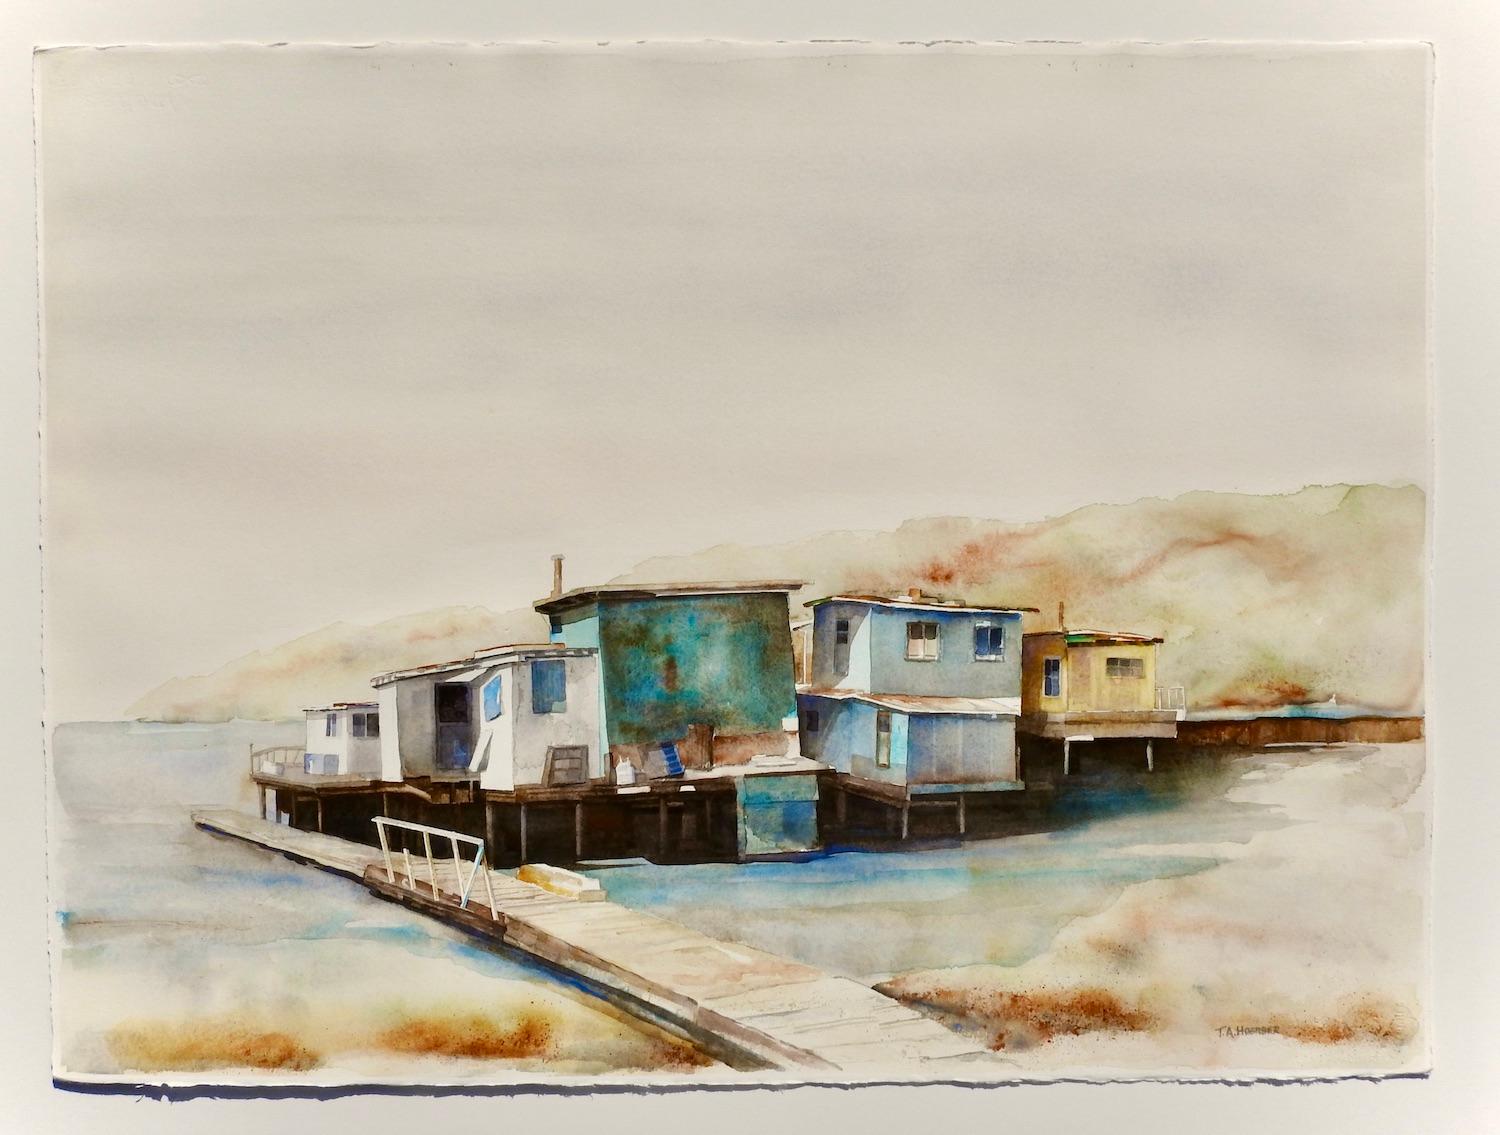 <p>Kommentare des Künstlers<br>Eine Gruppe von Hütten thront auf der flachen Seite des Wassers. Während einer Reise nach Sausalito, Kalifornien, macht der Künstler Thomas Hoerber einen Abstecher zur Rückseite der San Francisco Bay, wo er diese